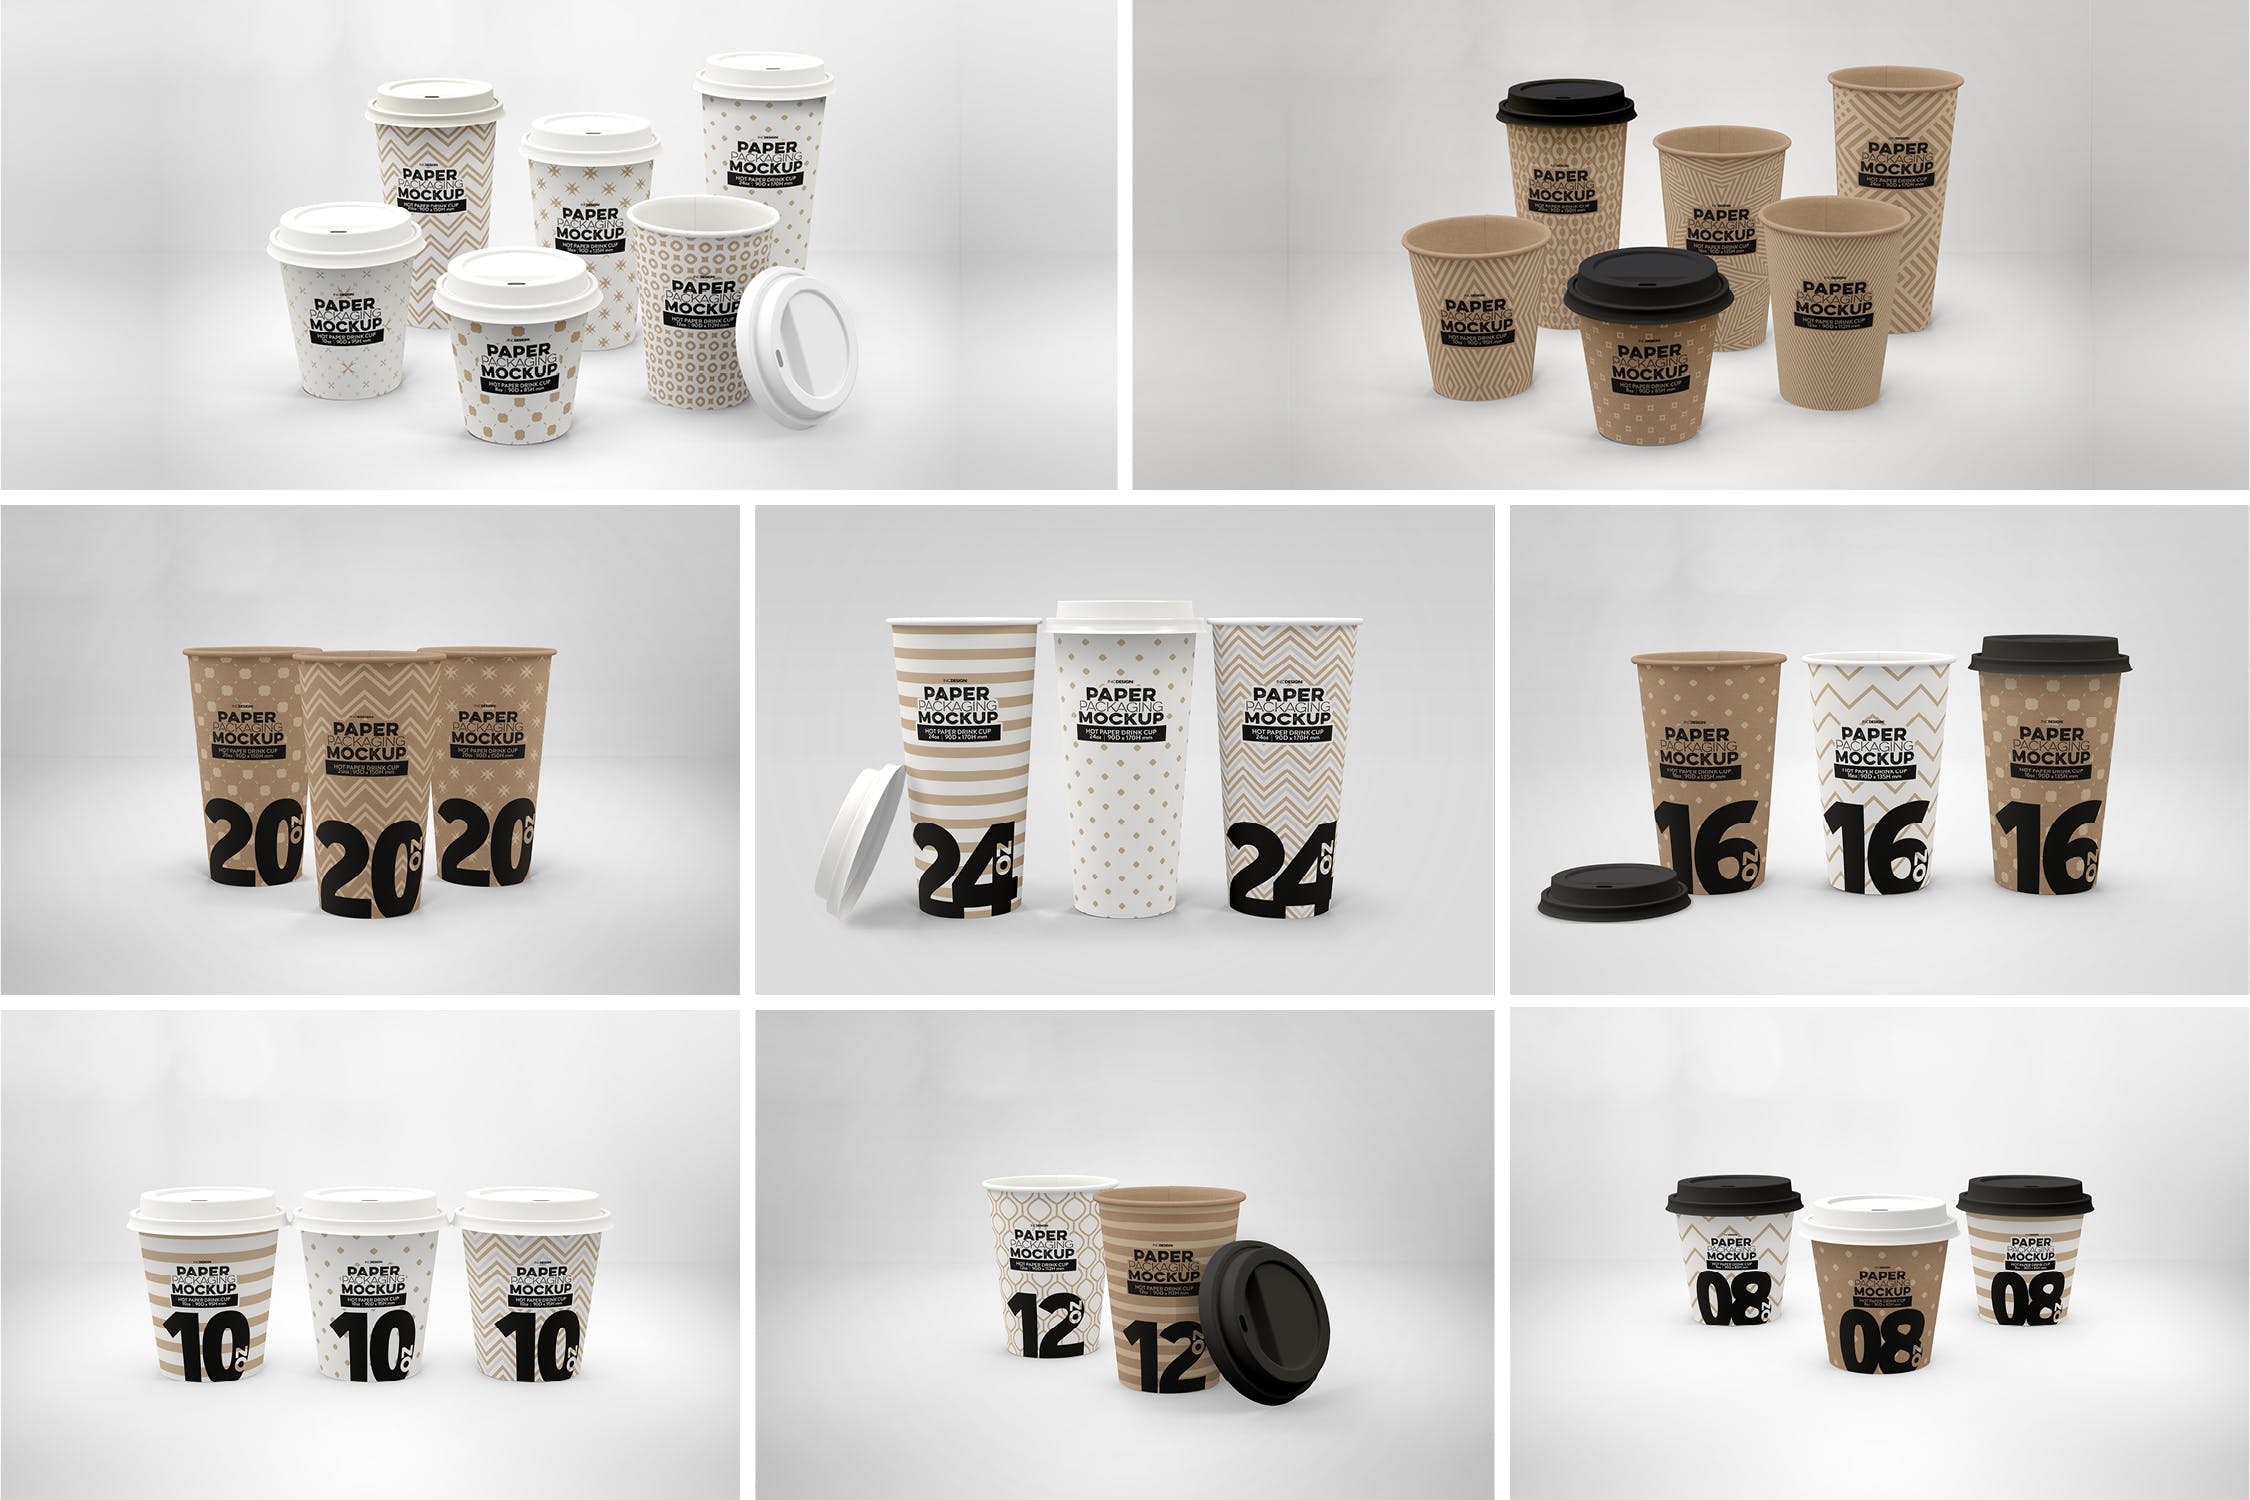 热饮一次性纸杯外观设计第一素材精选 Paper Hot Drink Cups Packaging Mockup插图(1)